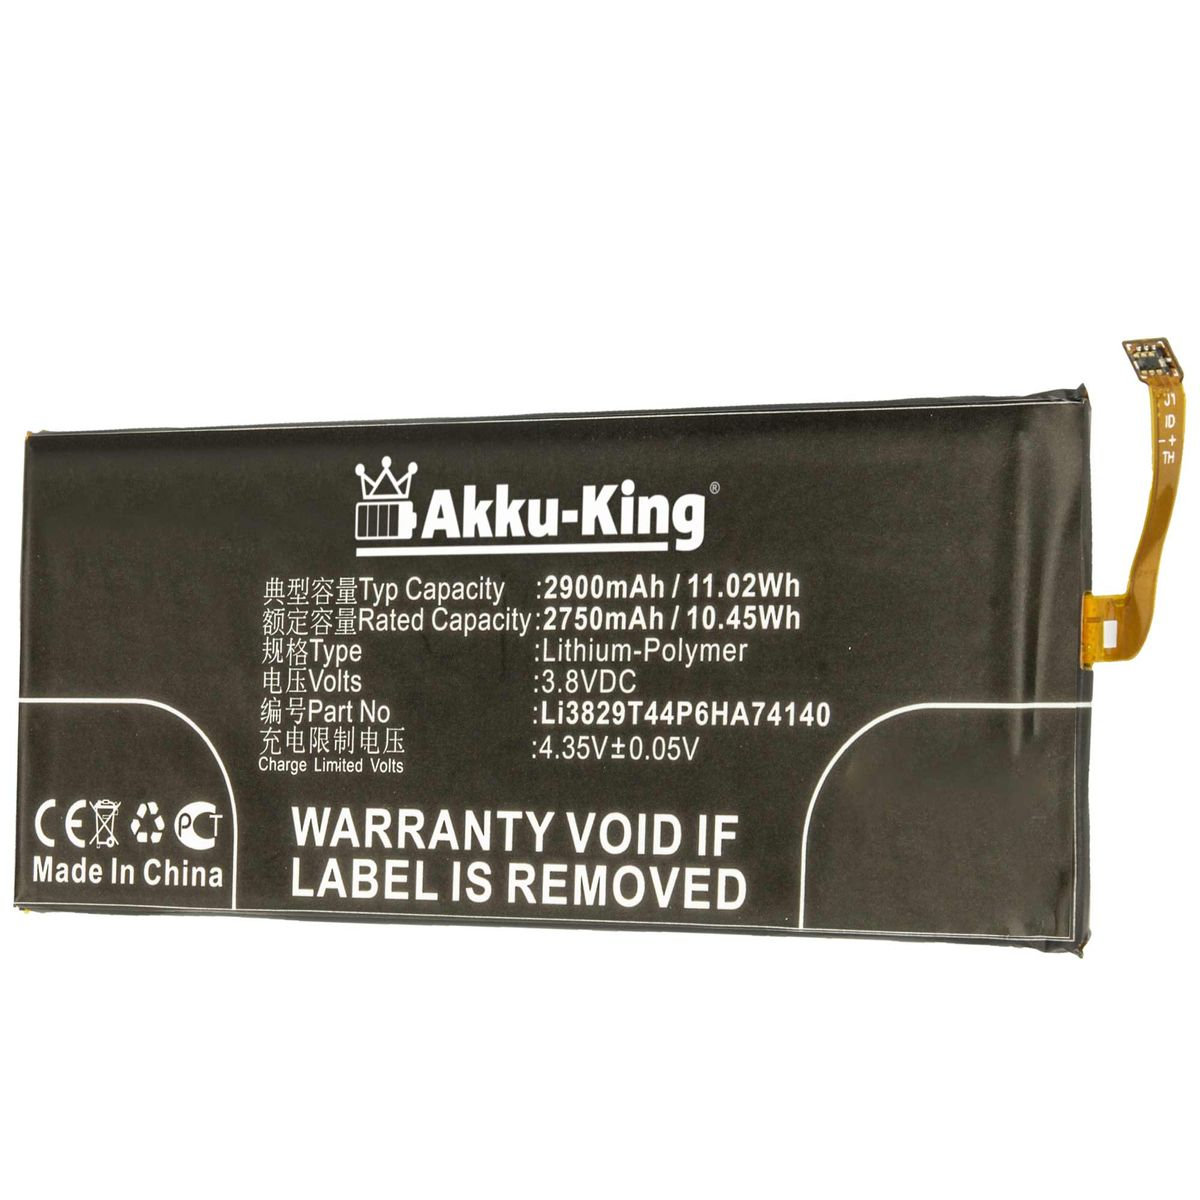 AKKU-KING Akku kompatibel mit ZTE Li3829T44P6HA74140 Handy-Akku, 2900mAh Volt, 3.8 Li-Polymer